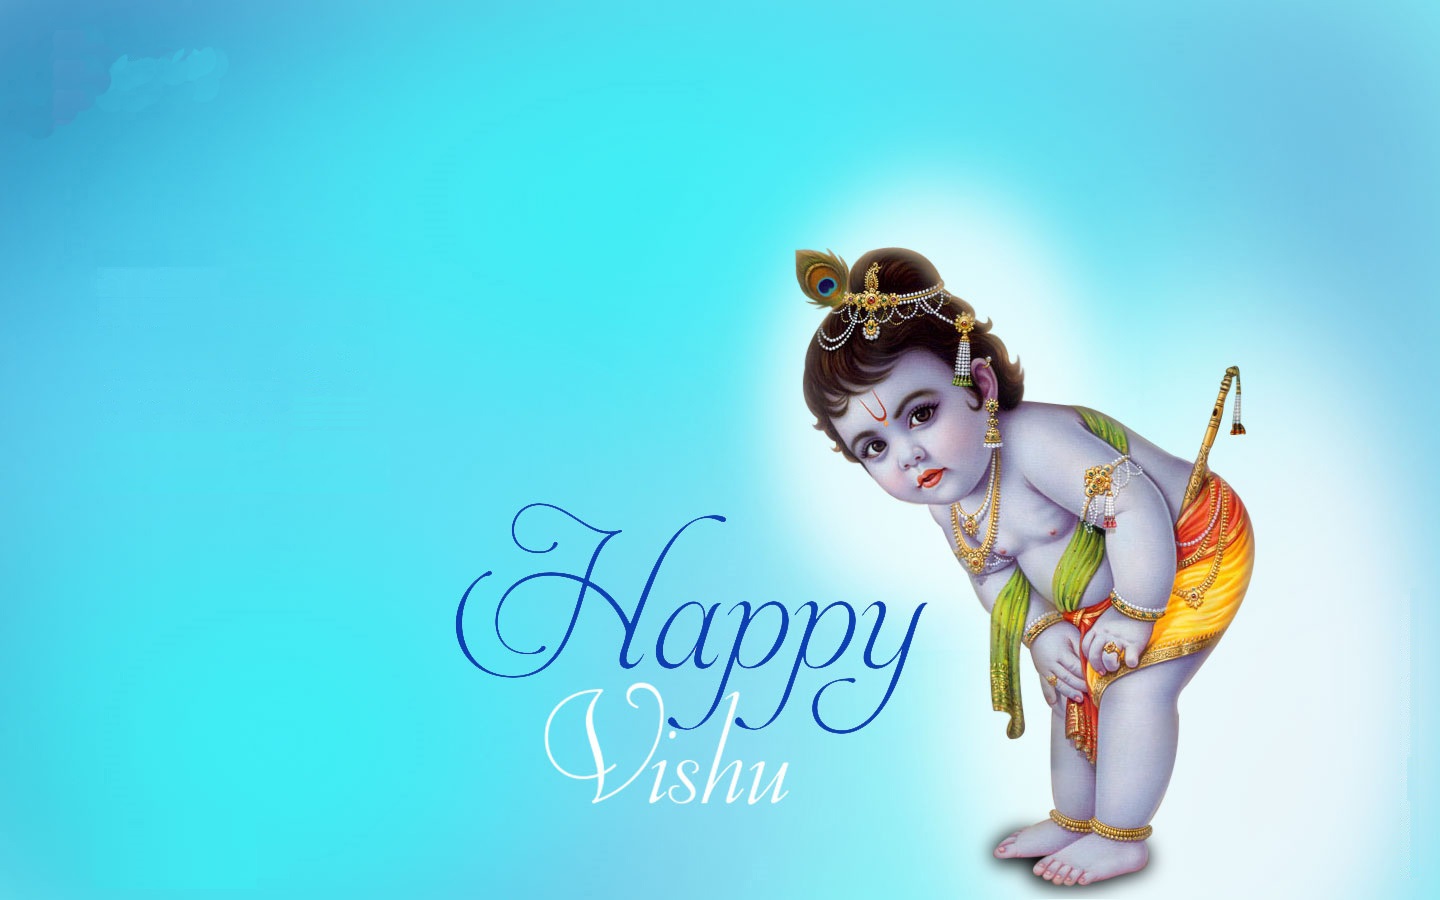 Lord Krishna Happy Vishu - 1440x900 Wallpaper 